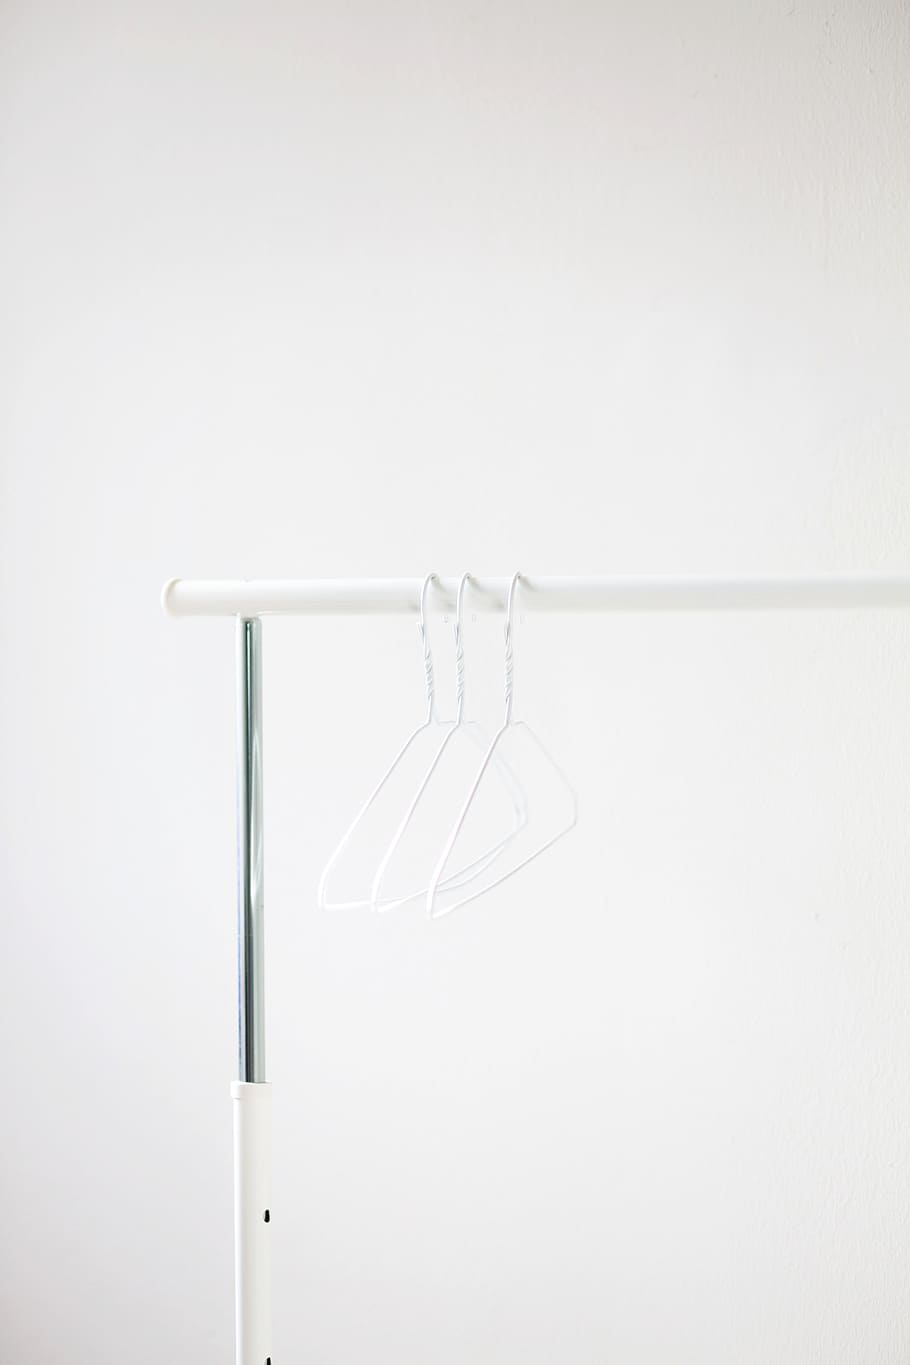 hanger, rail, clothing rail, minimal, white, hanging, fashion